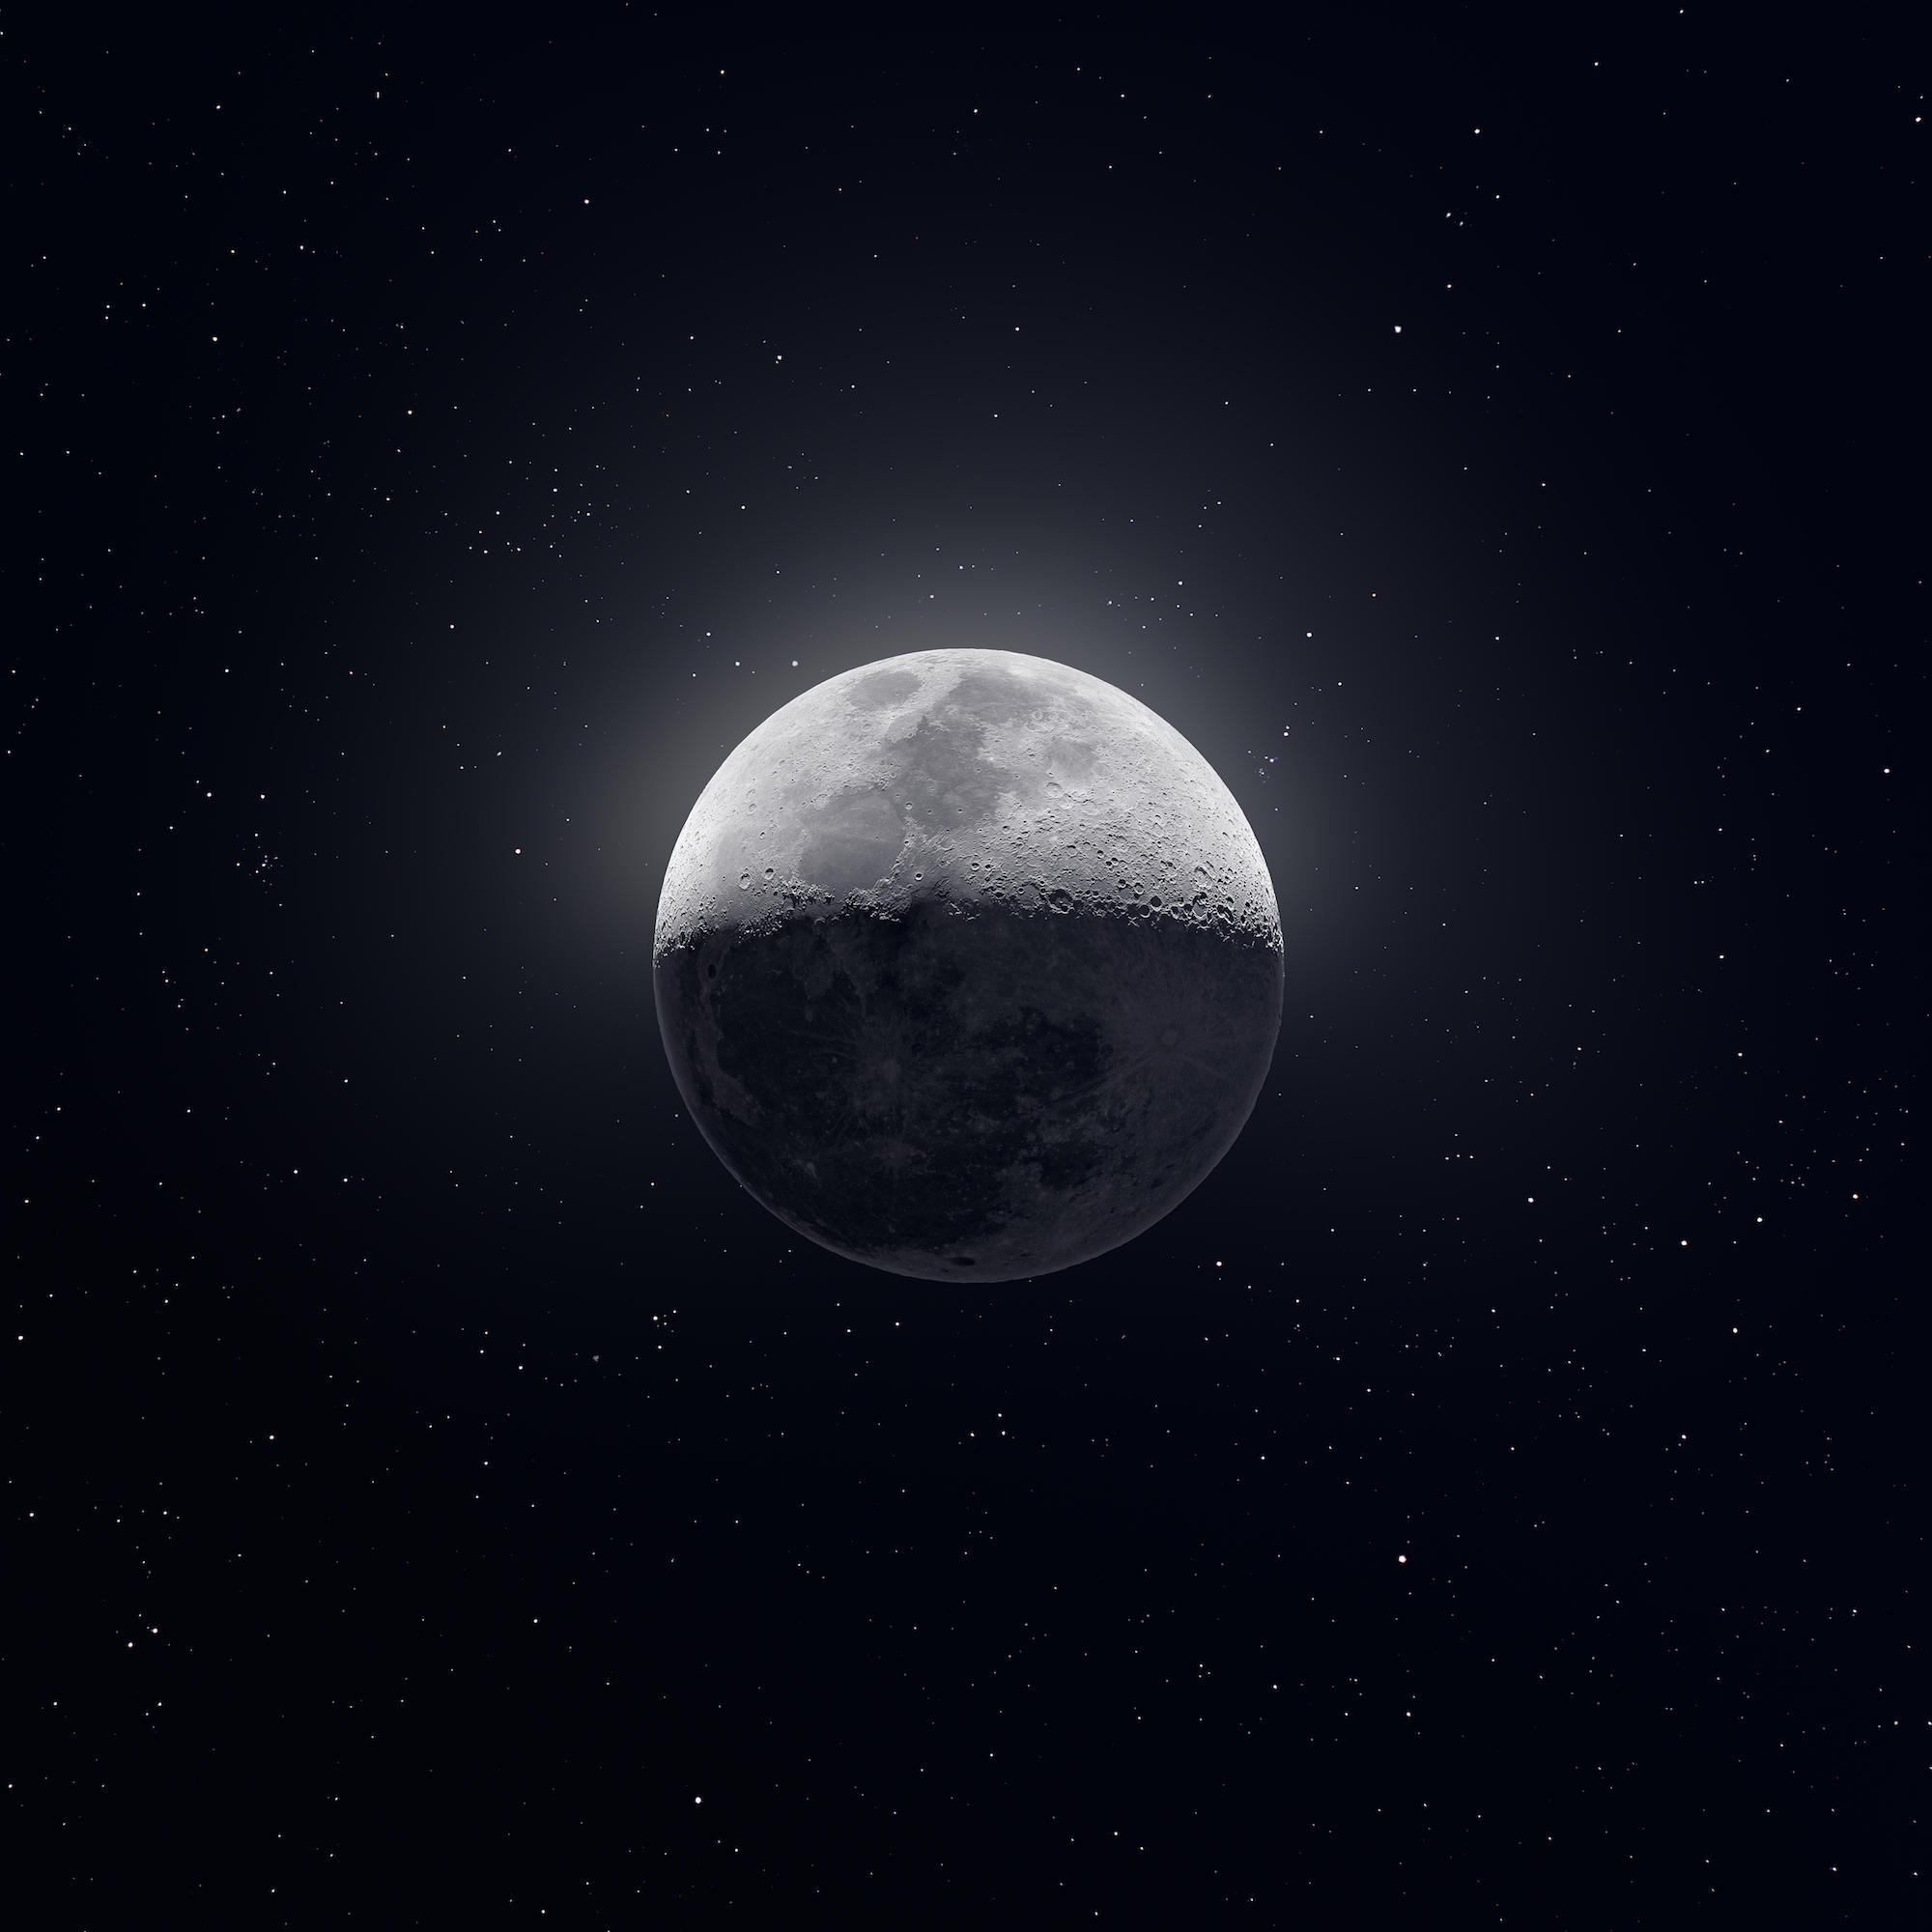 50 000 images combinées : la lune en ultra haute résolution